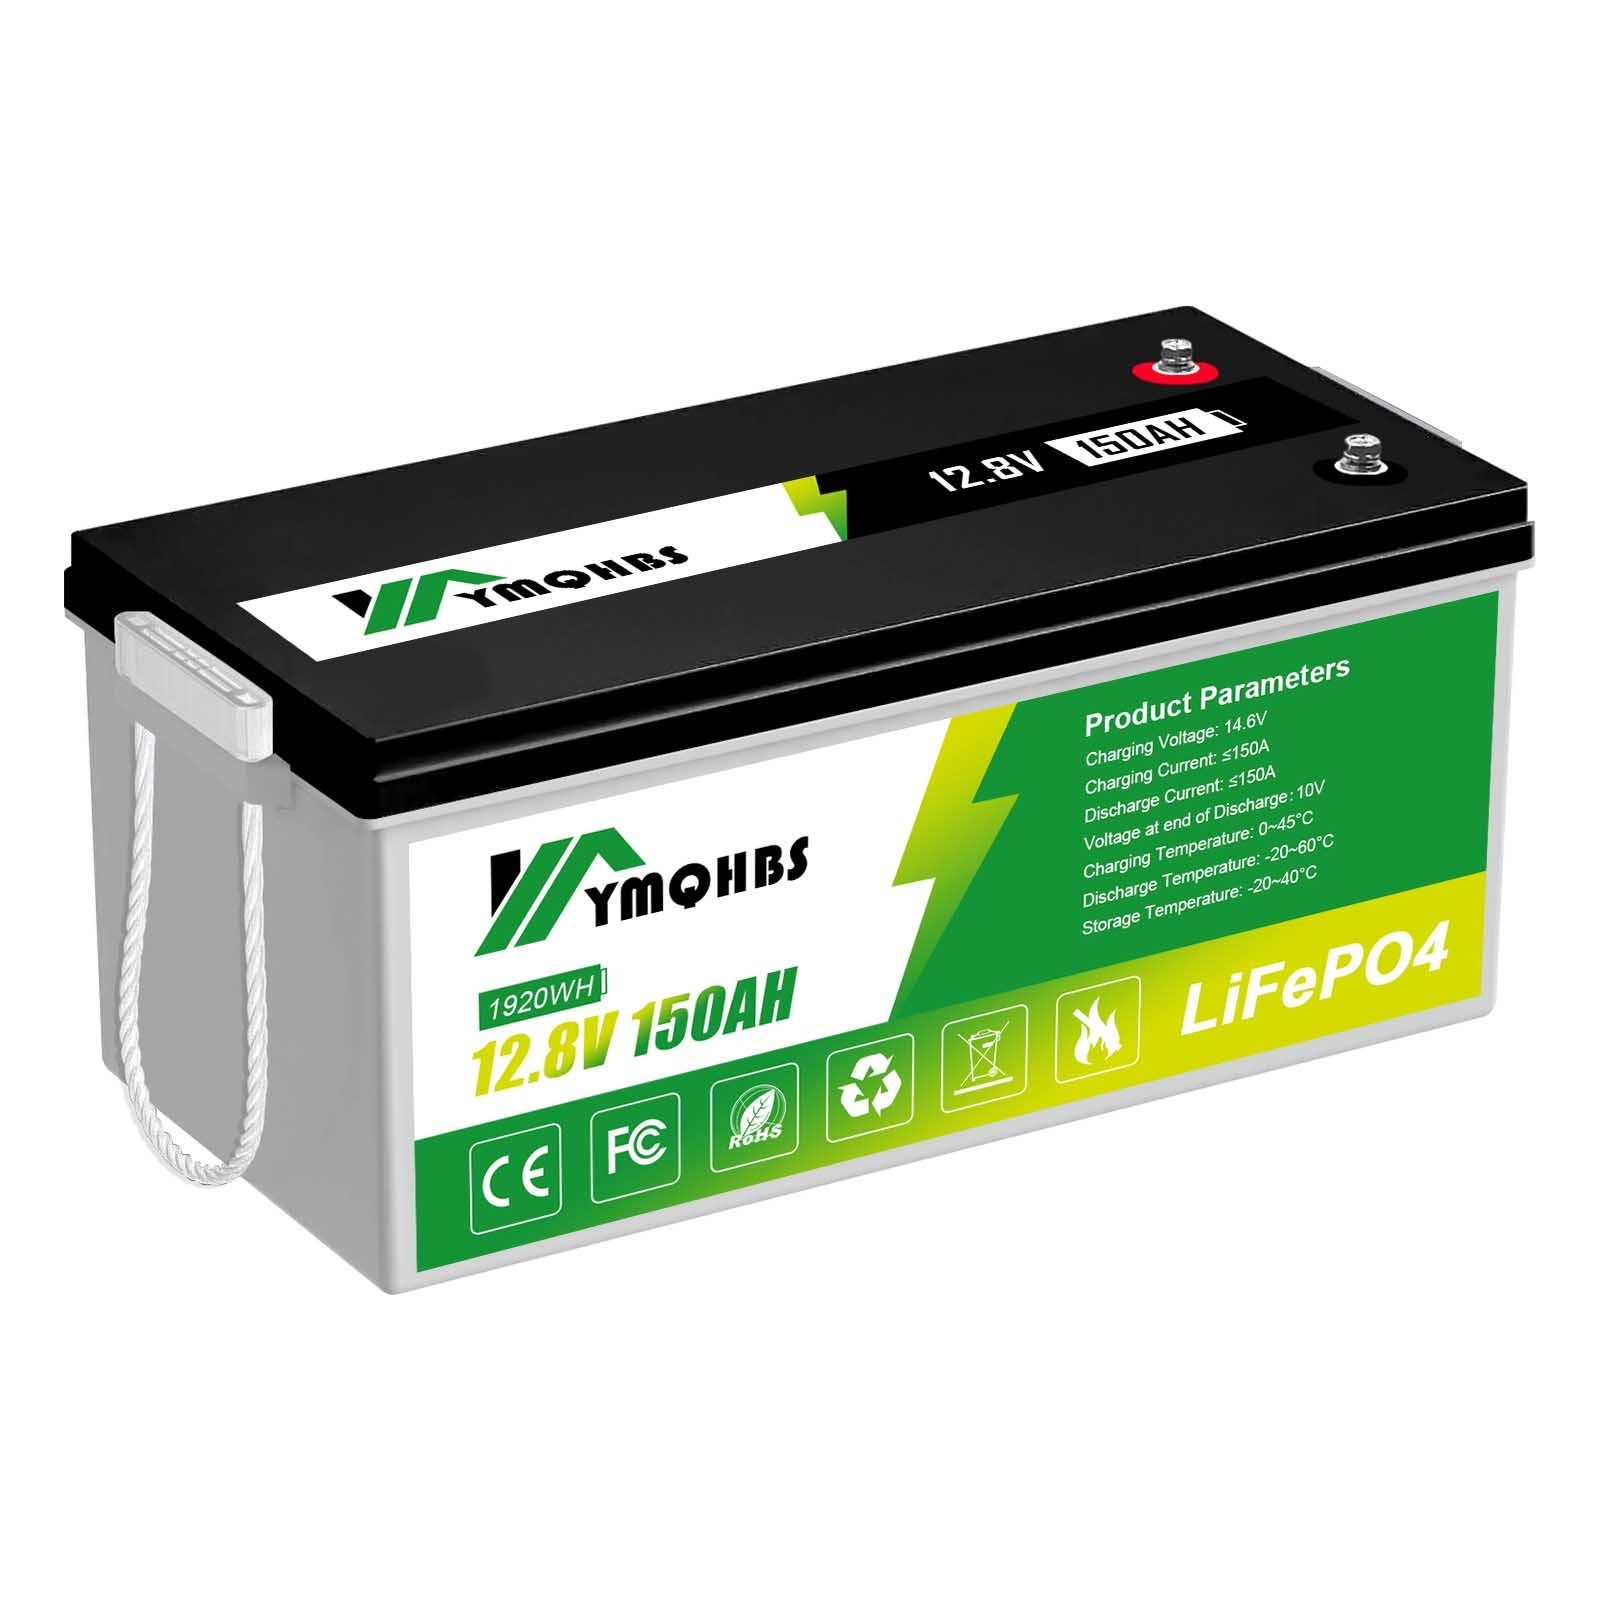 GLIESE 150Ah erweiterbar LiFePO4 Batterie,